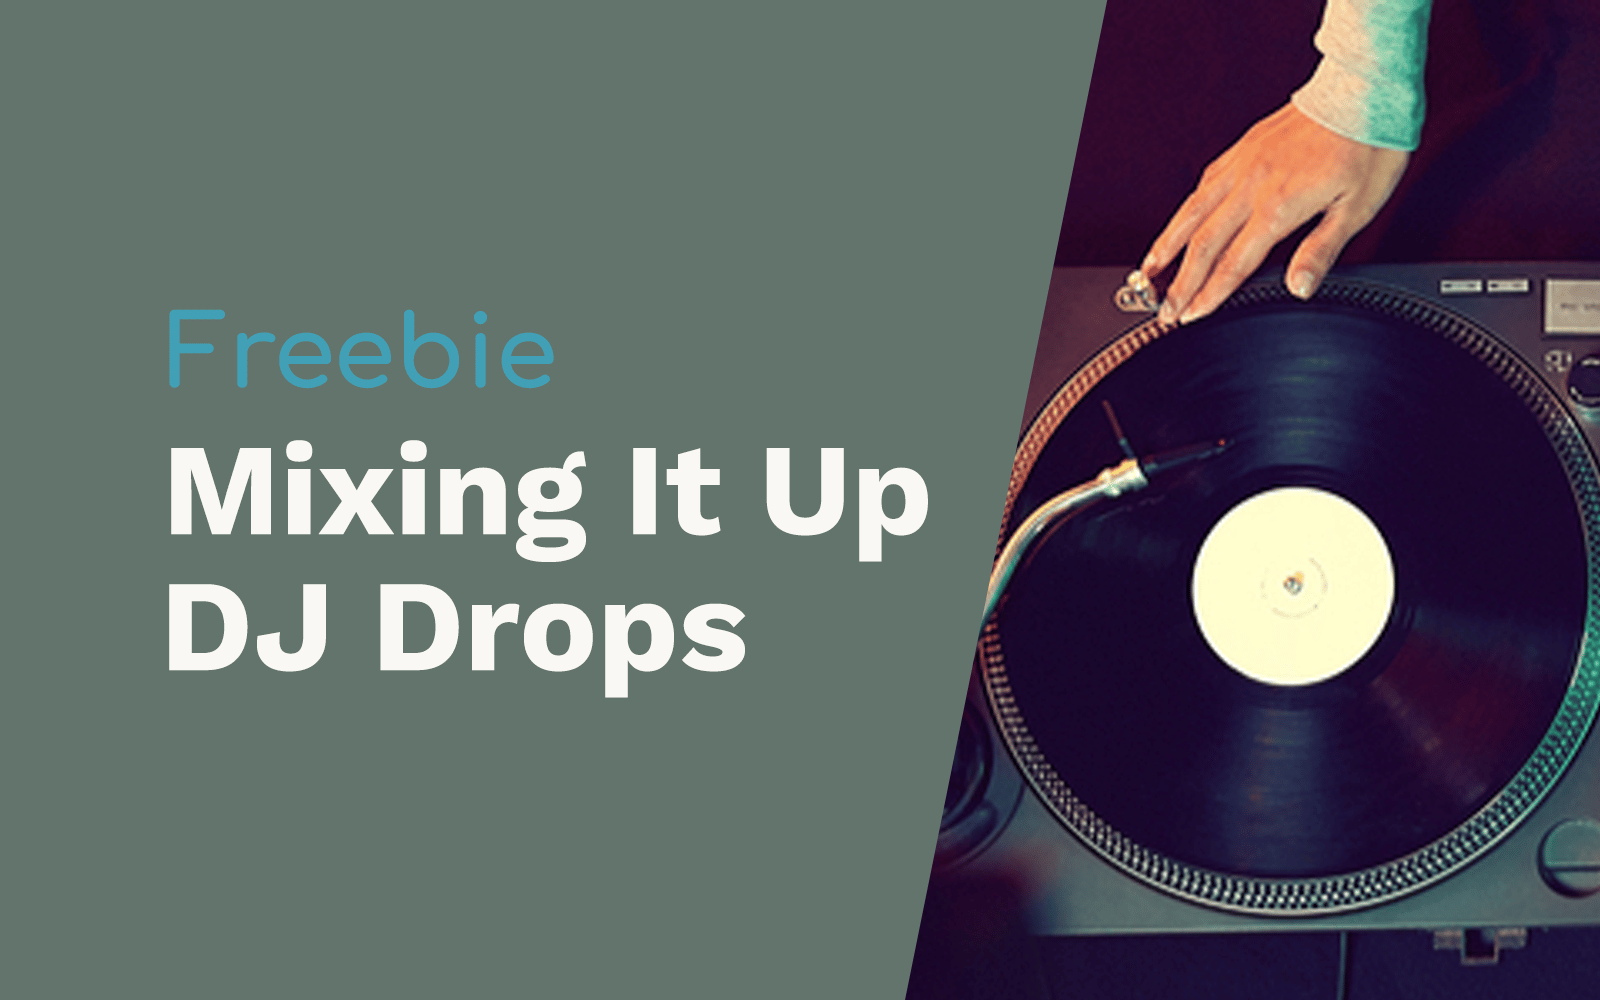 DJ Drops for Mixing It Up DJ Drops DJ drops Music Radio Creative